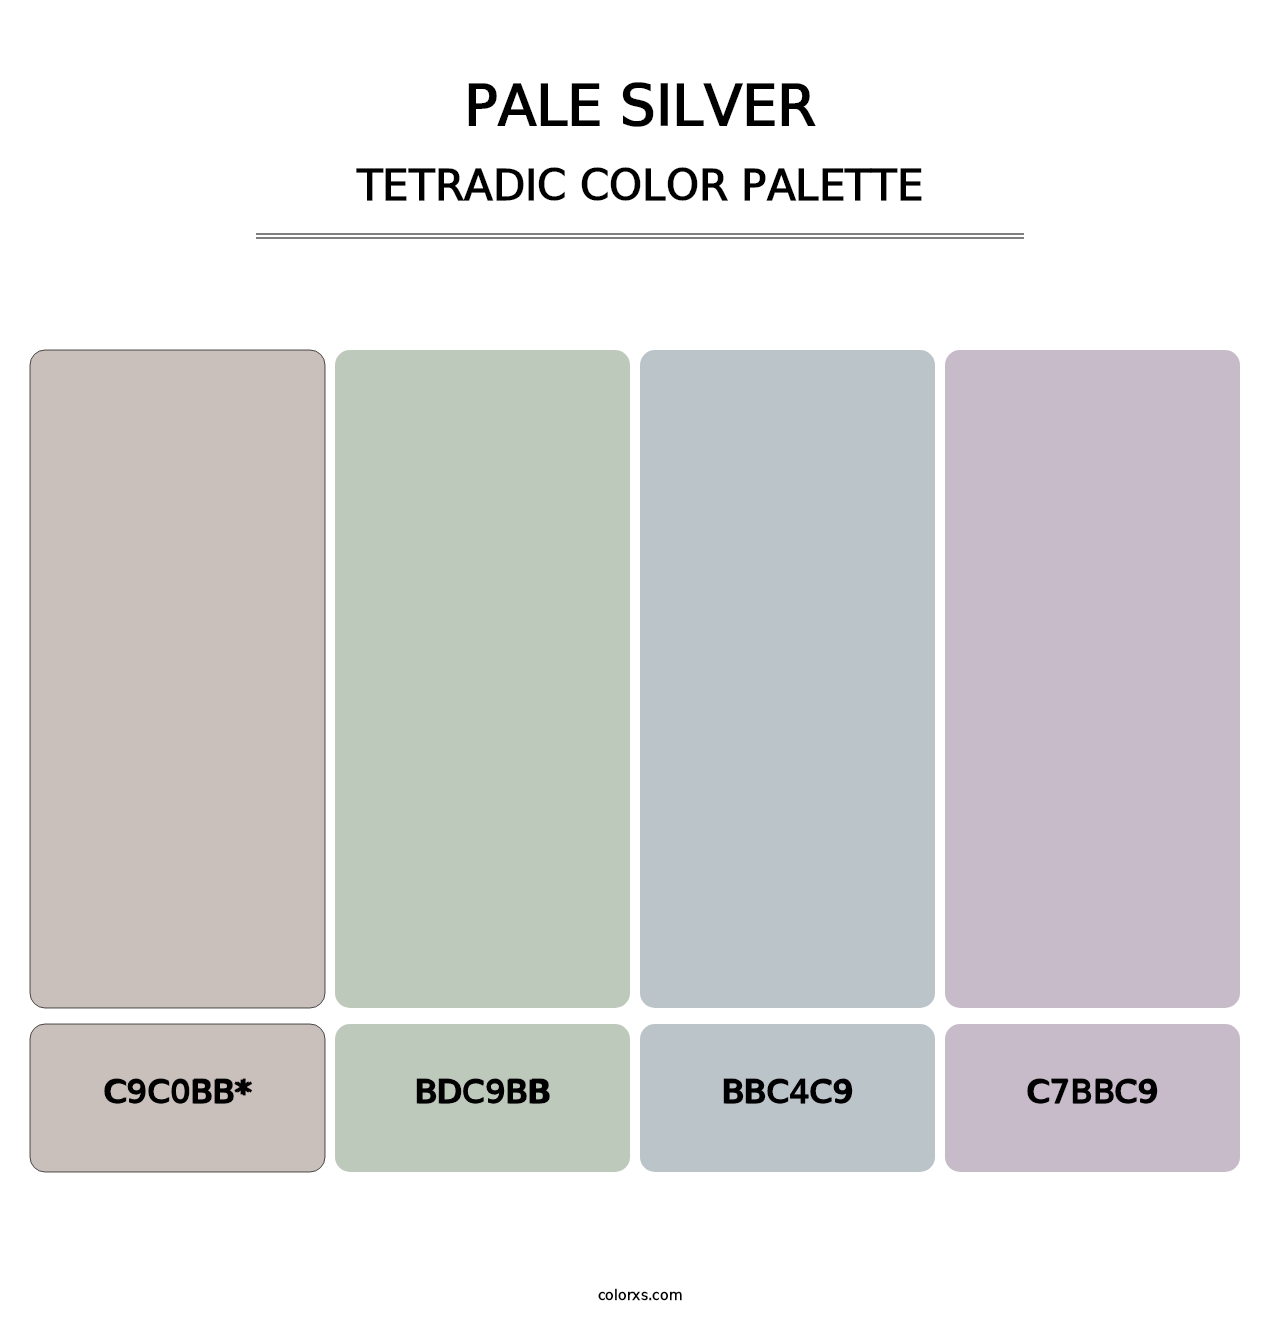 Pale Silver - Tetradic Color Palette